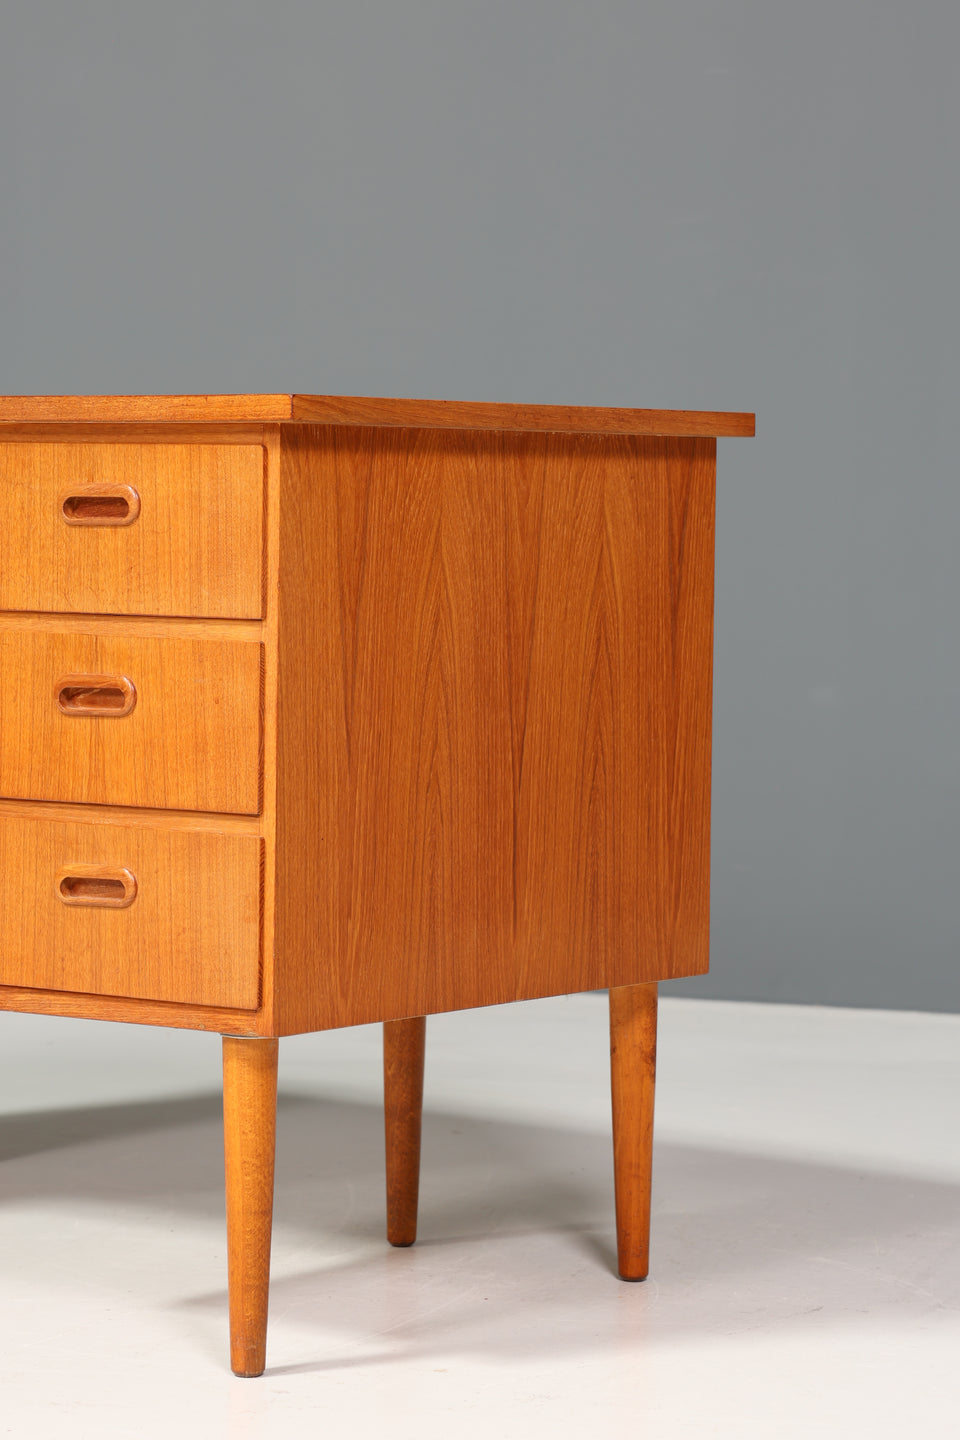 Wunderschöner Mid Century Schreibtisch Danish Design Bürotisch Vintage Office Table